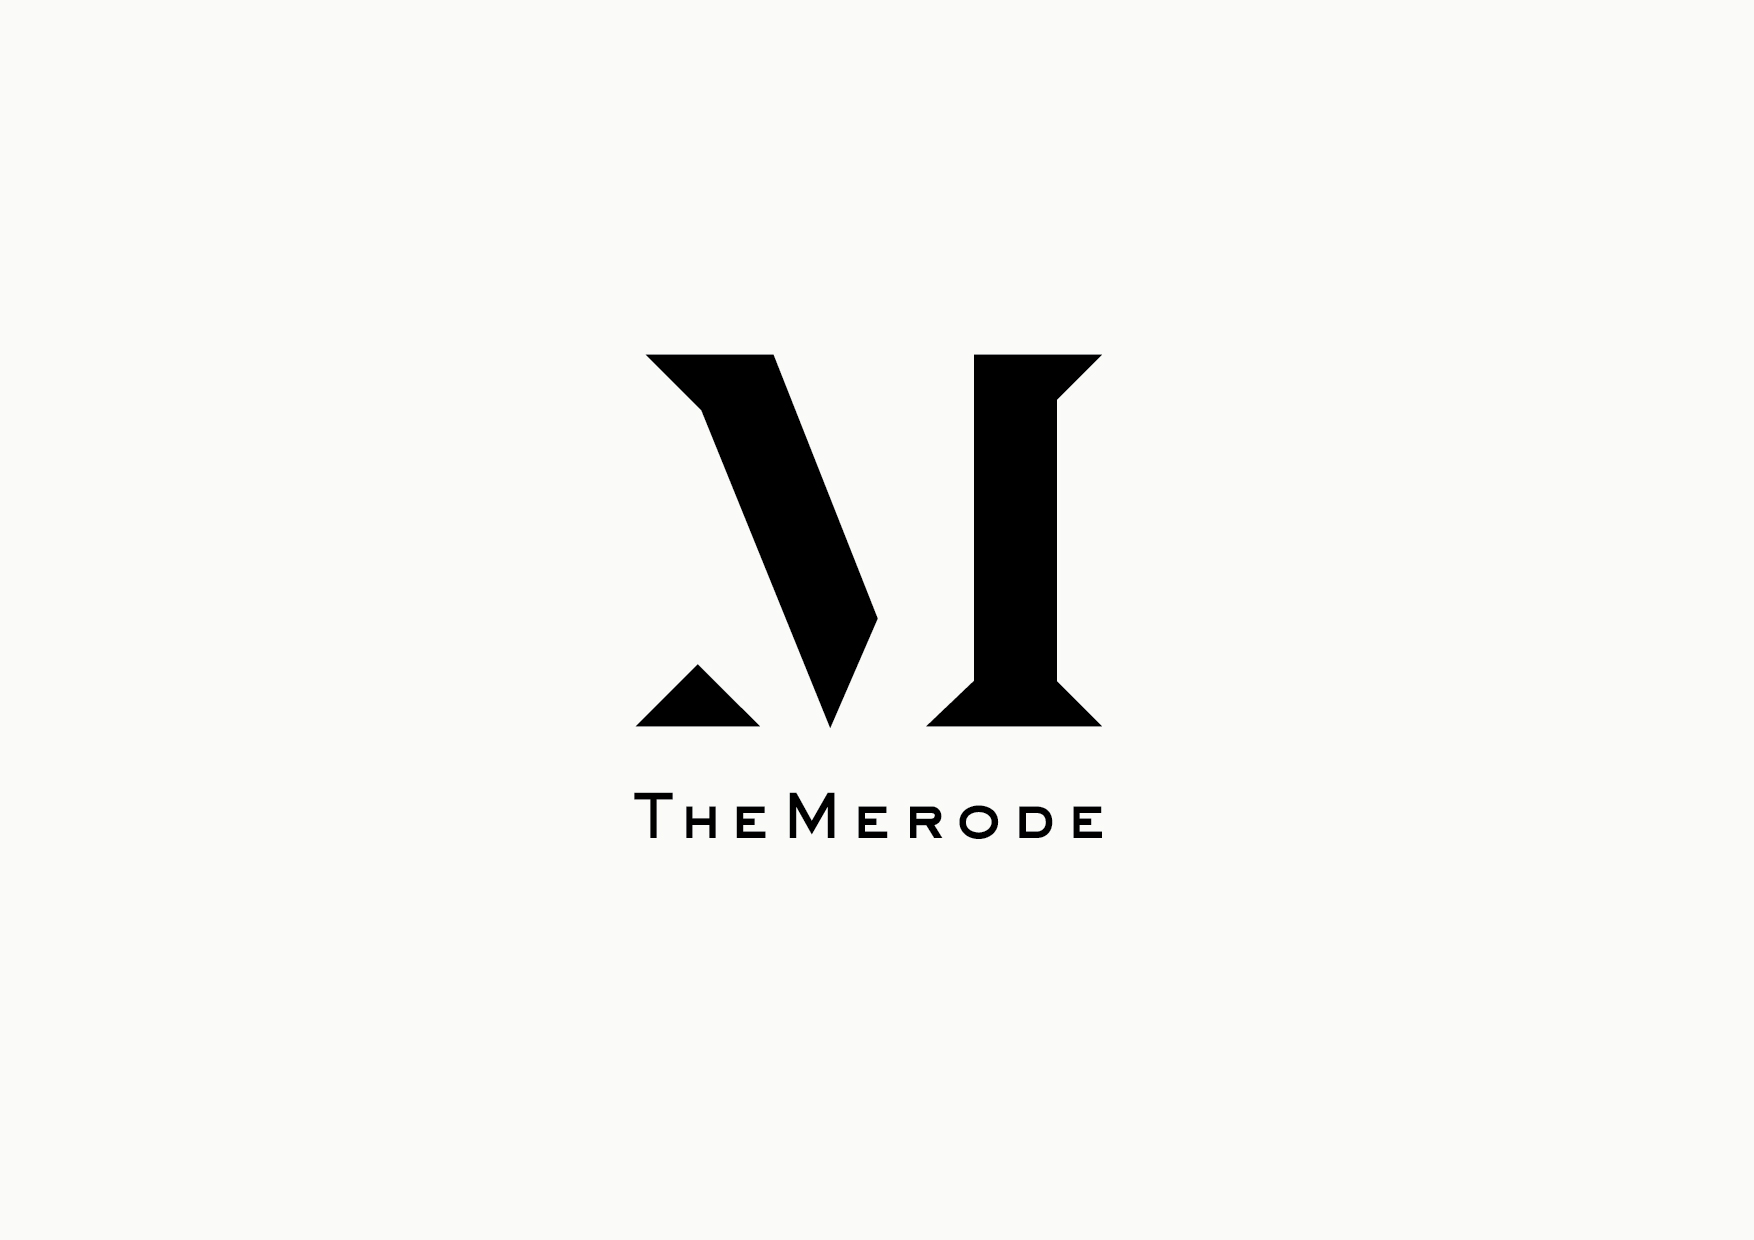 The Merode logo